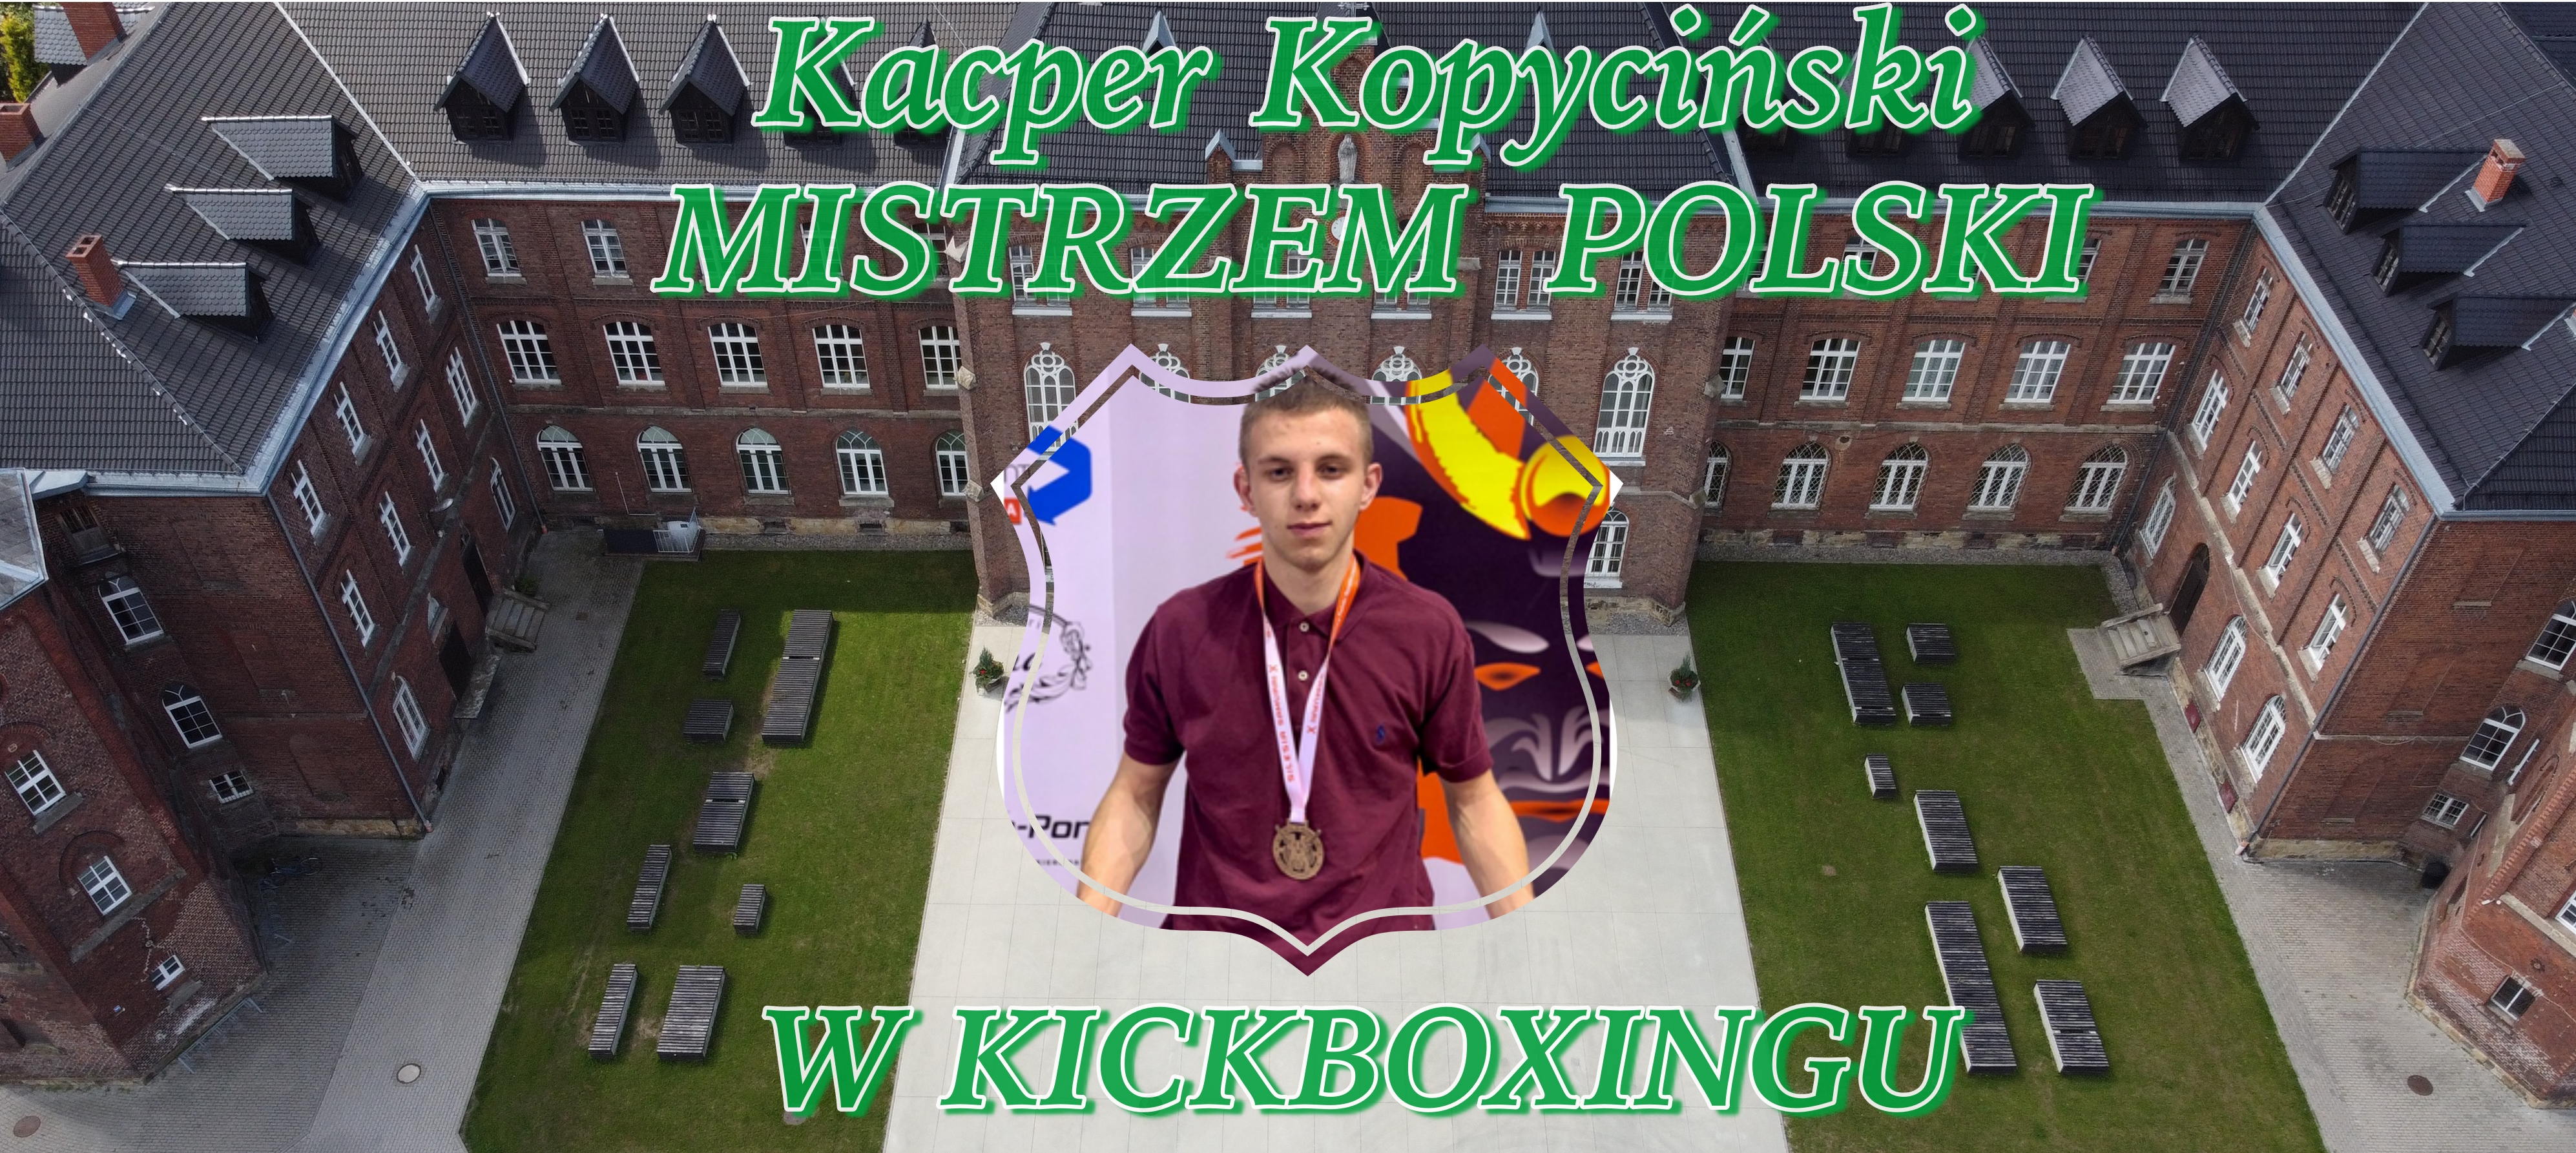  Kacper Kopyciński, uczeń 3 klasy biologiczno-chemicznej Zespołu Szkół i Placówek Oświatowych w Nysie, wywalczył tytuł mistrza Polski w kickboxingu.